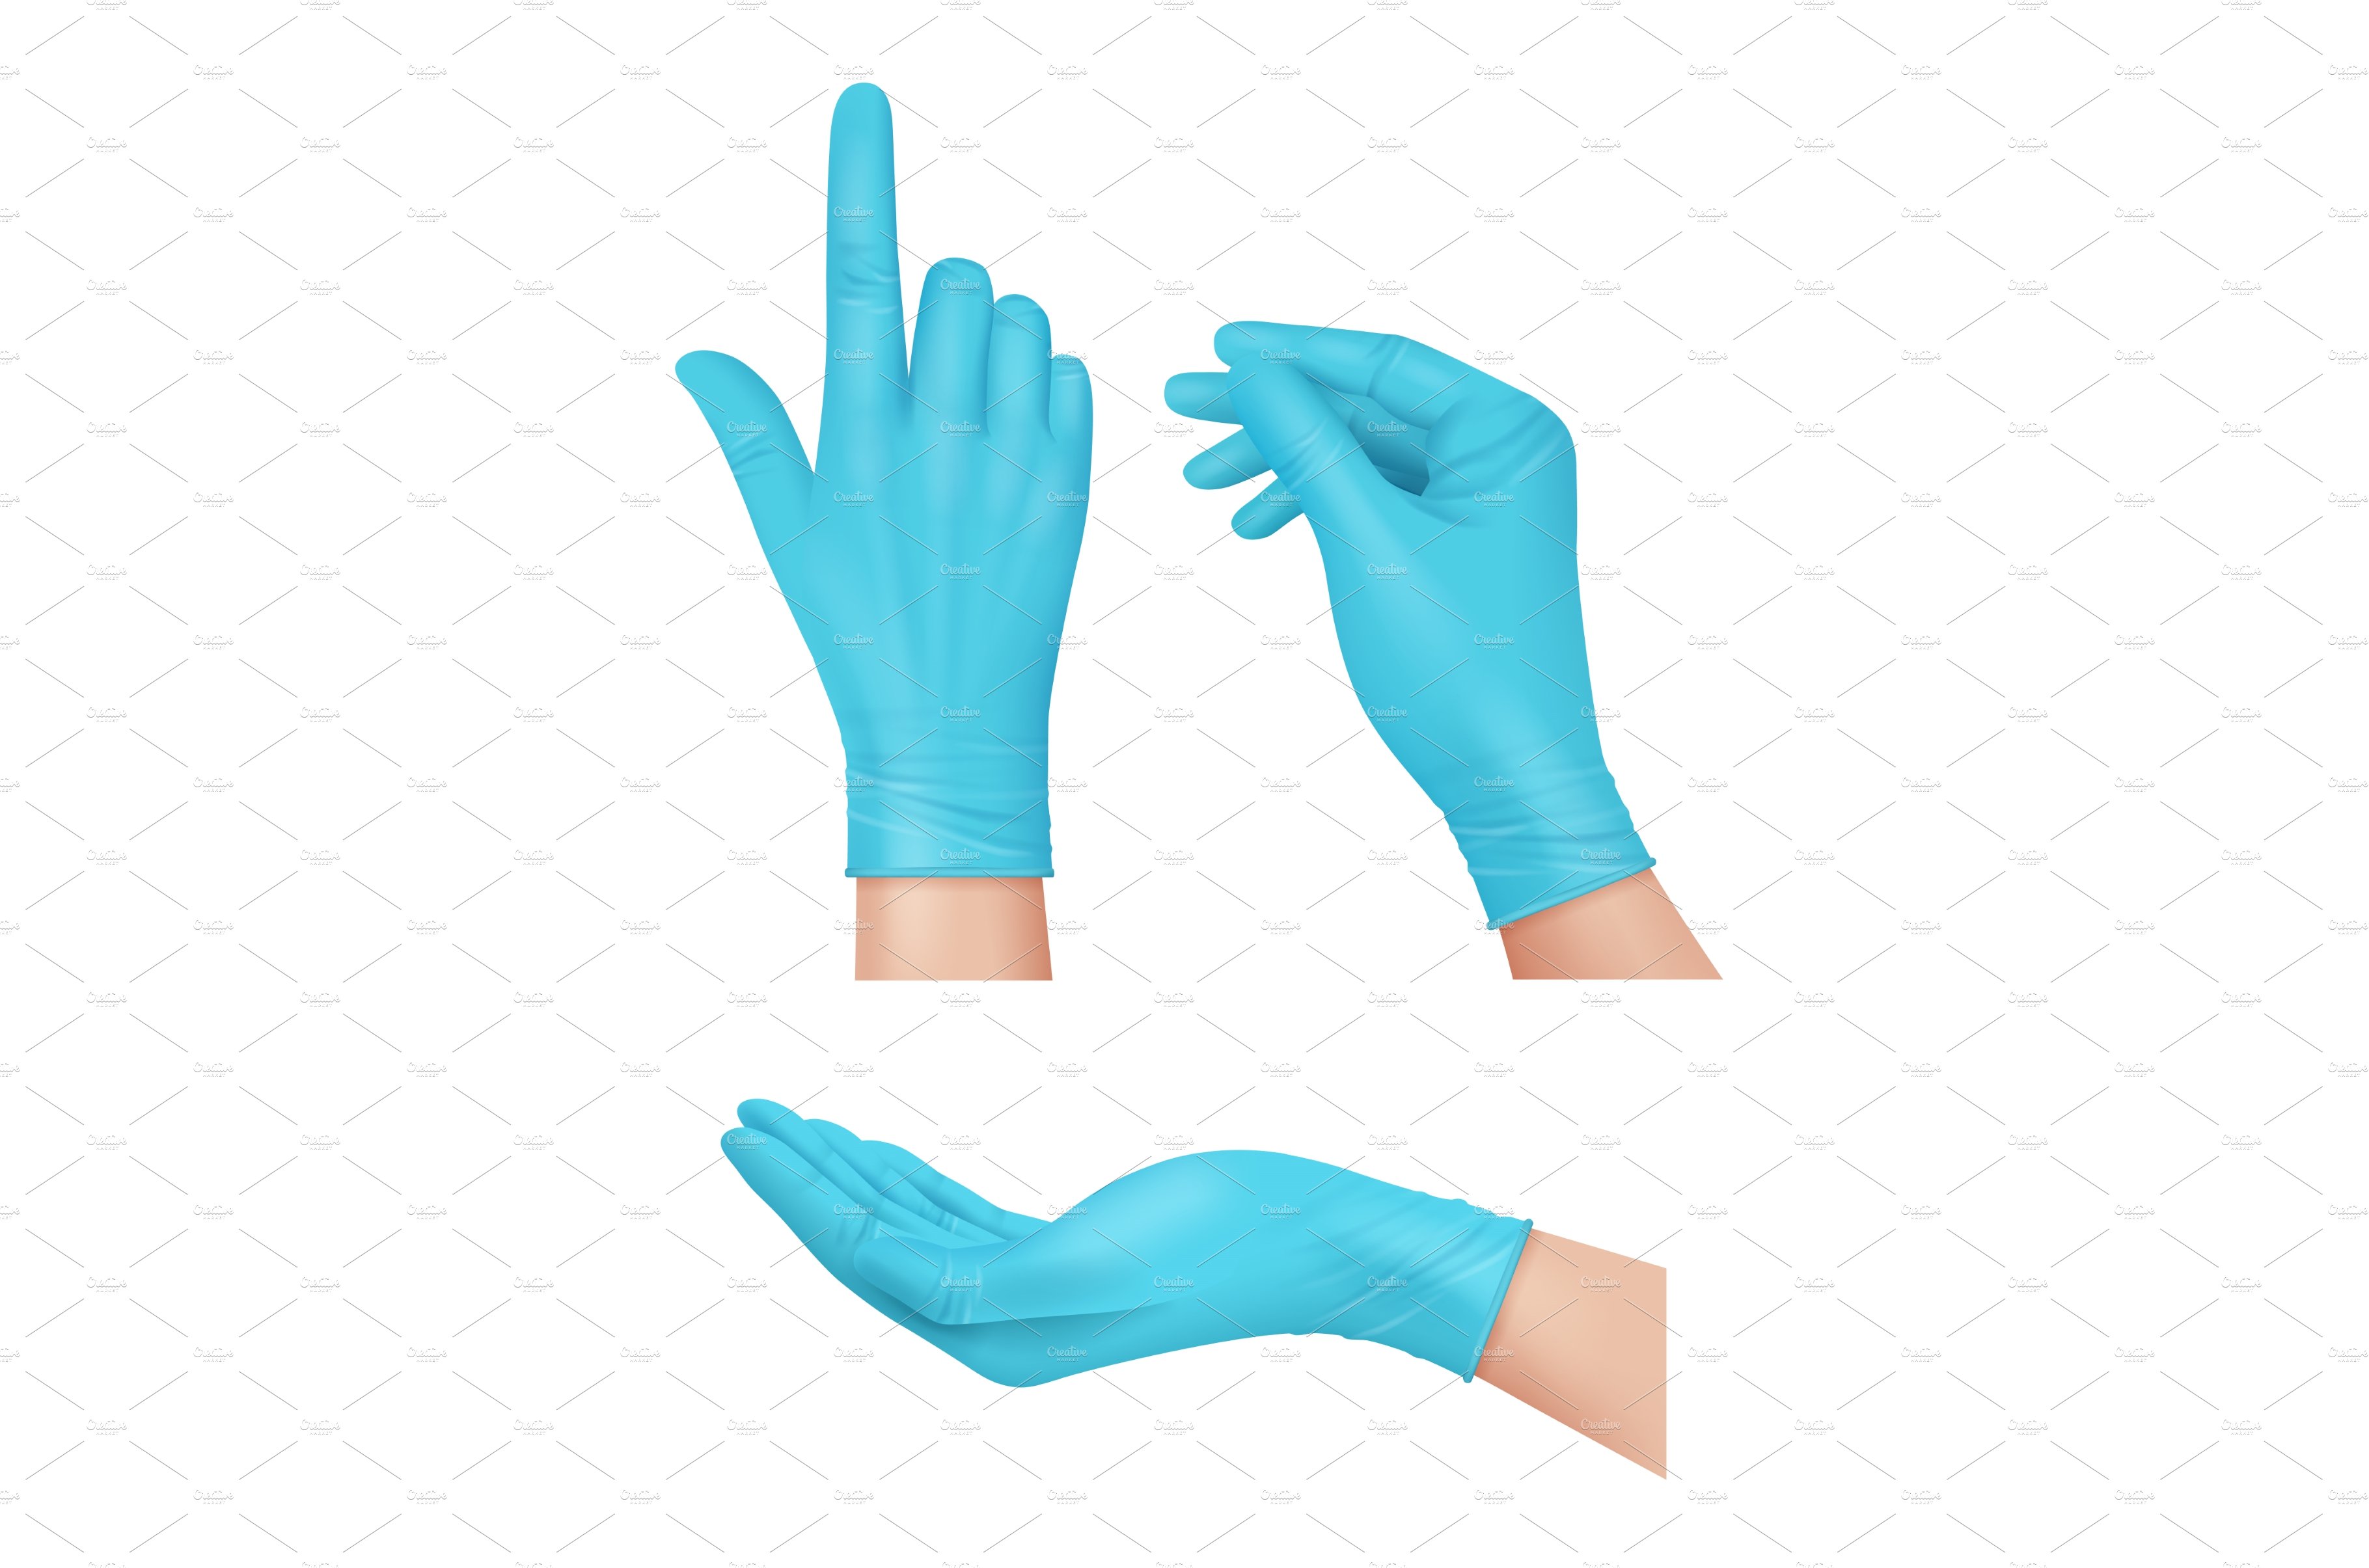 Medical gloves. Blue rubber gloves cover image.